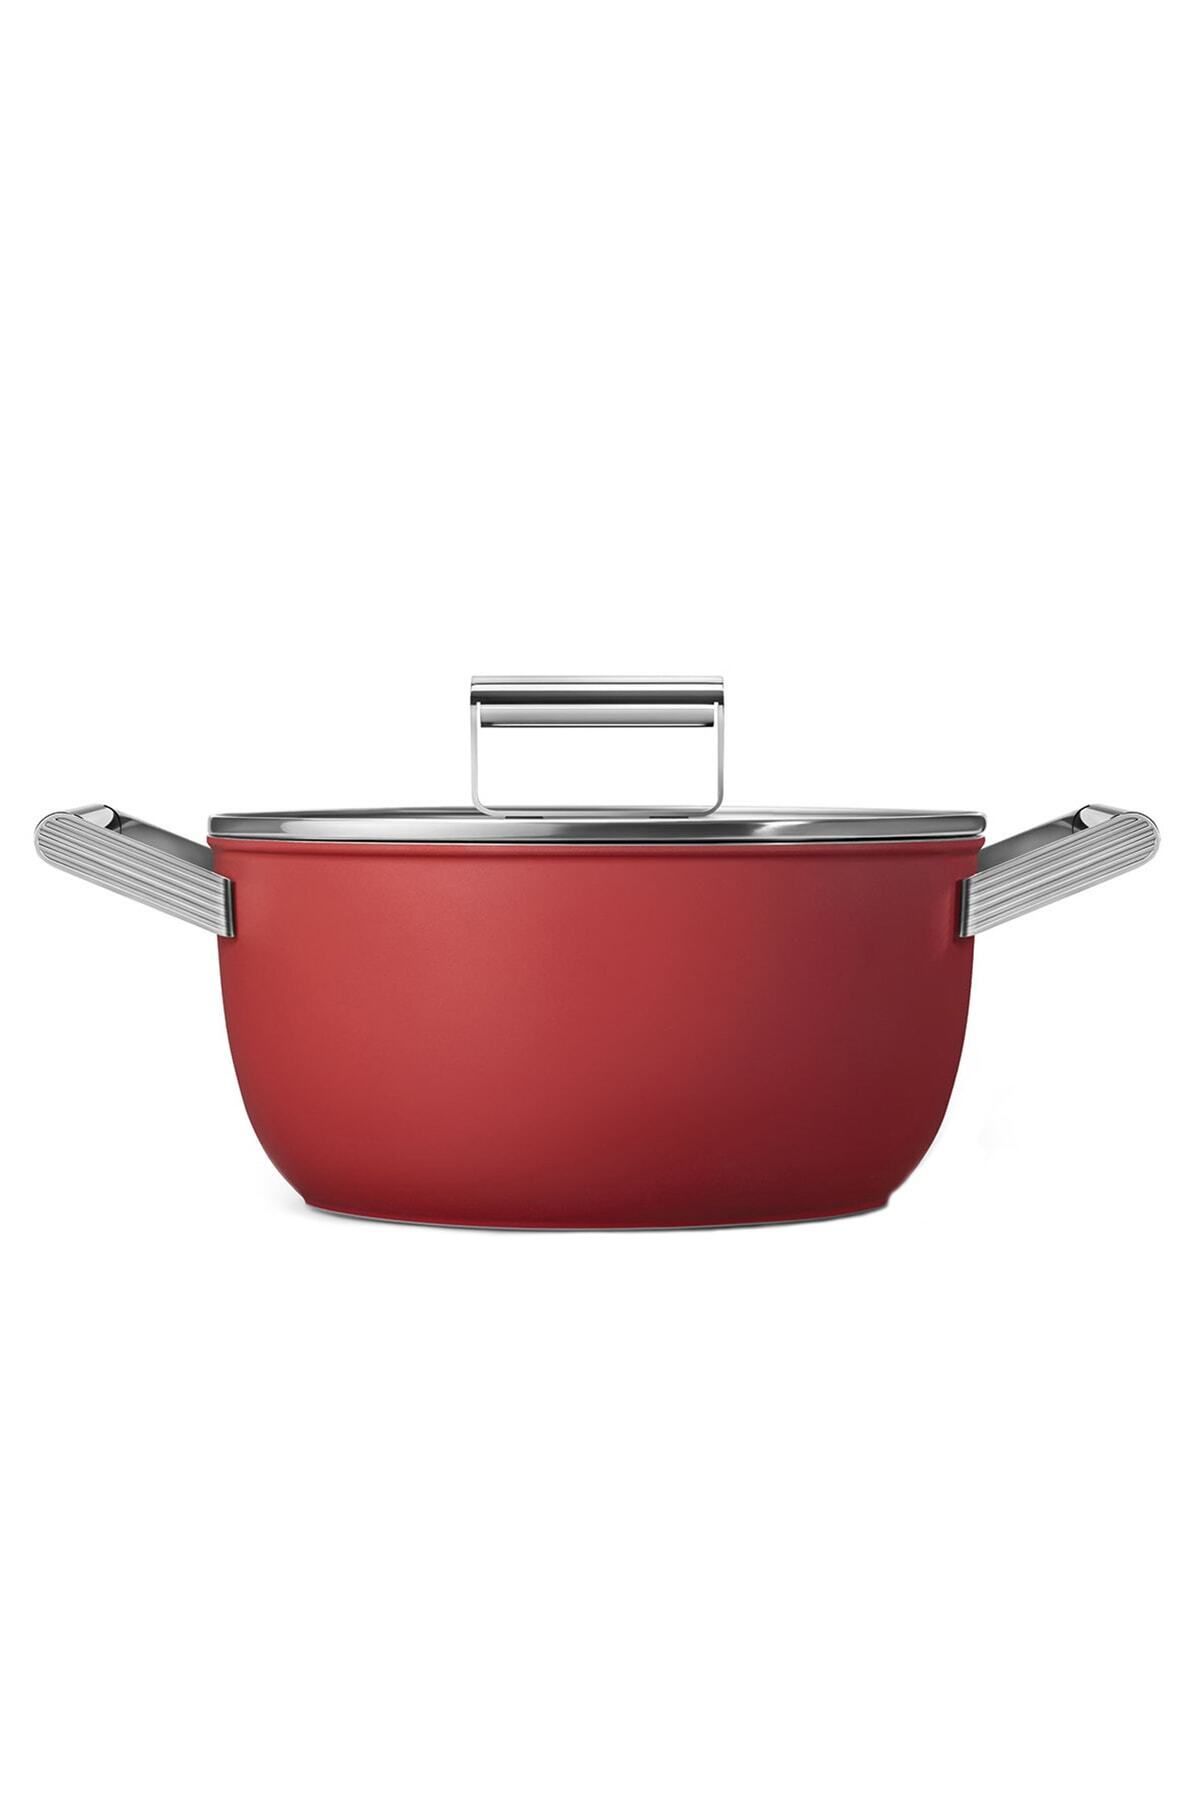 Smeg Cookware 50's Style Kırmızı Cam Kapaklı 24 Cm Tencere